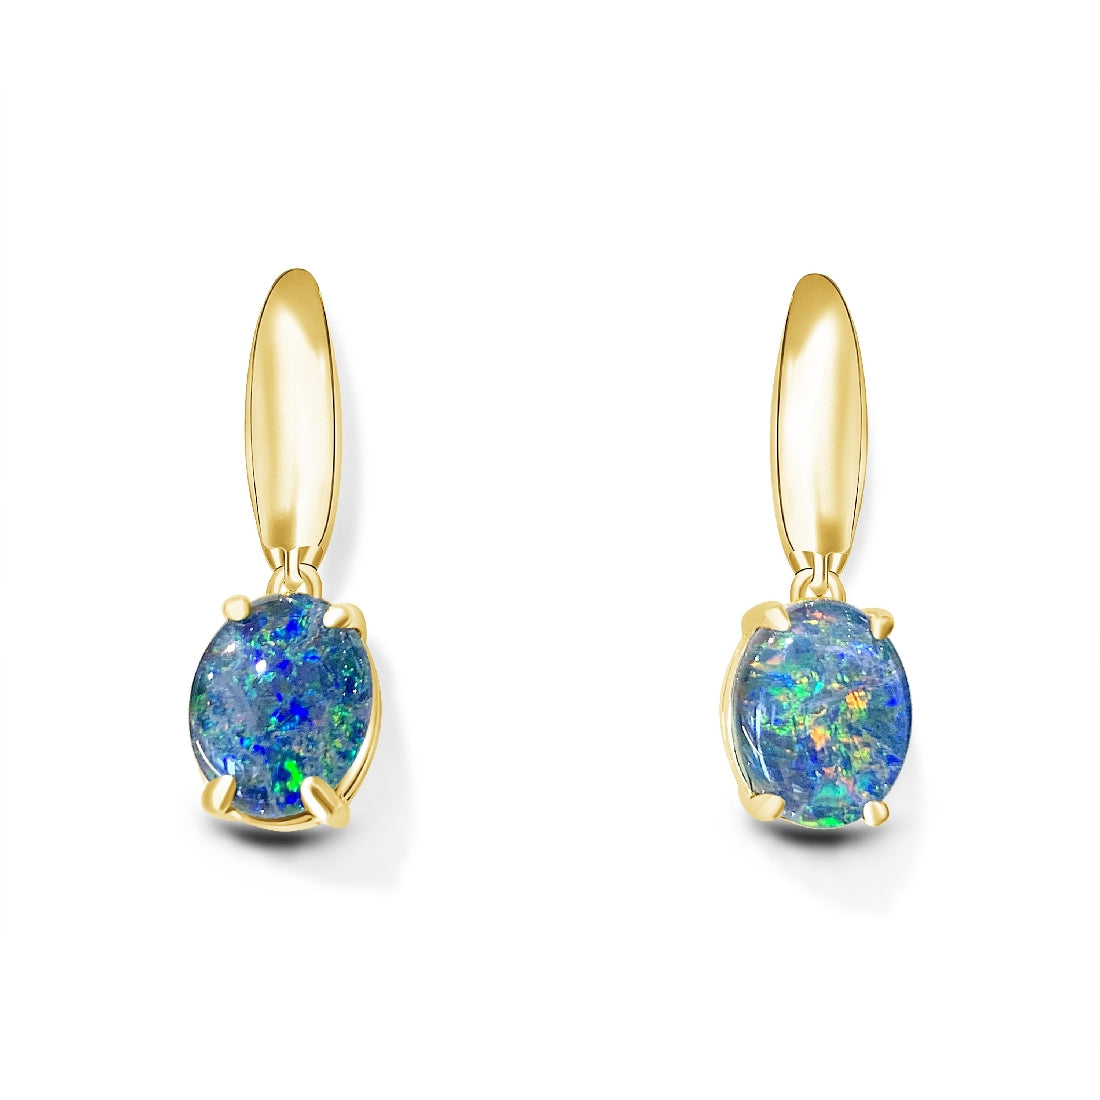 Gold Plated Silver dangling Oval 10x8mm Opal triplets - Masterpiece Jewellery Opal & Gems Sydney Australia | Online Shop